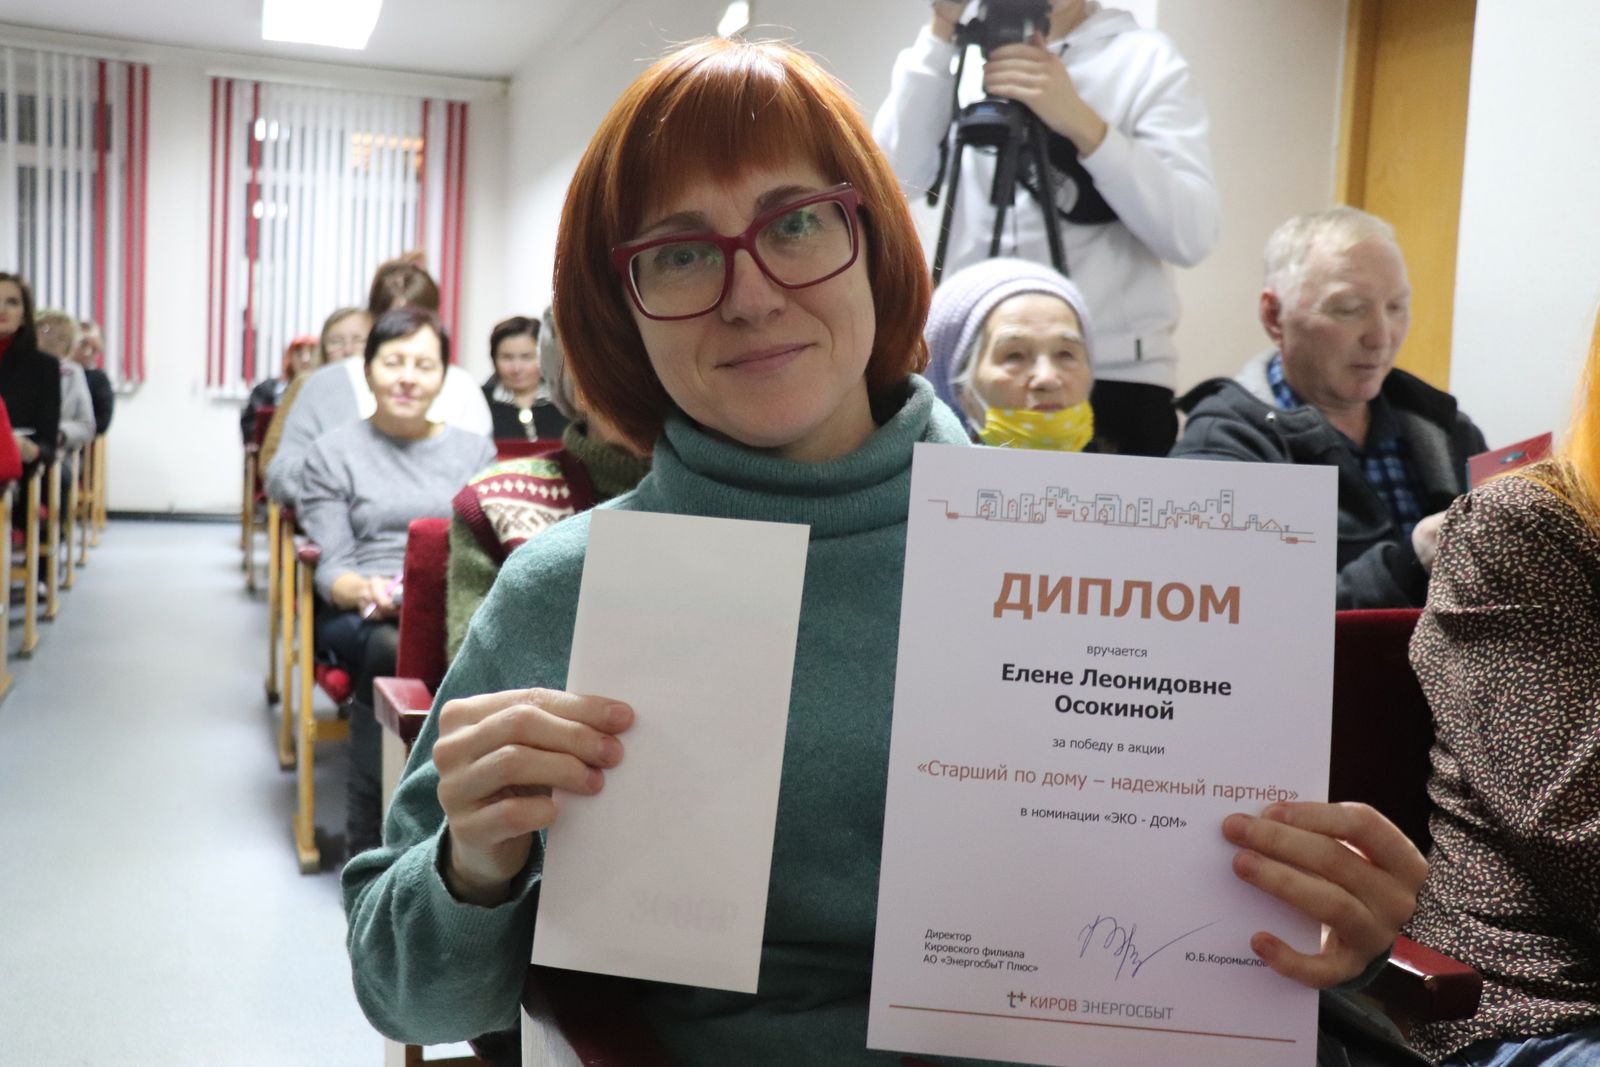 В Кировской области наградили победителей акции «Старший по дому — надежный партнер»